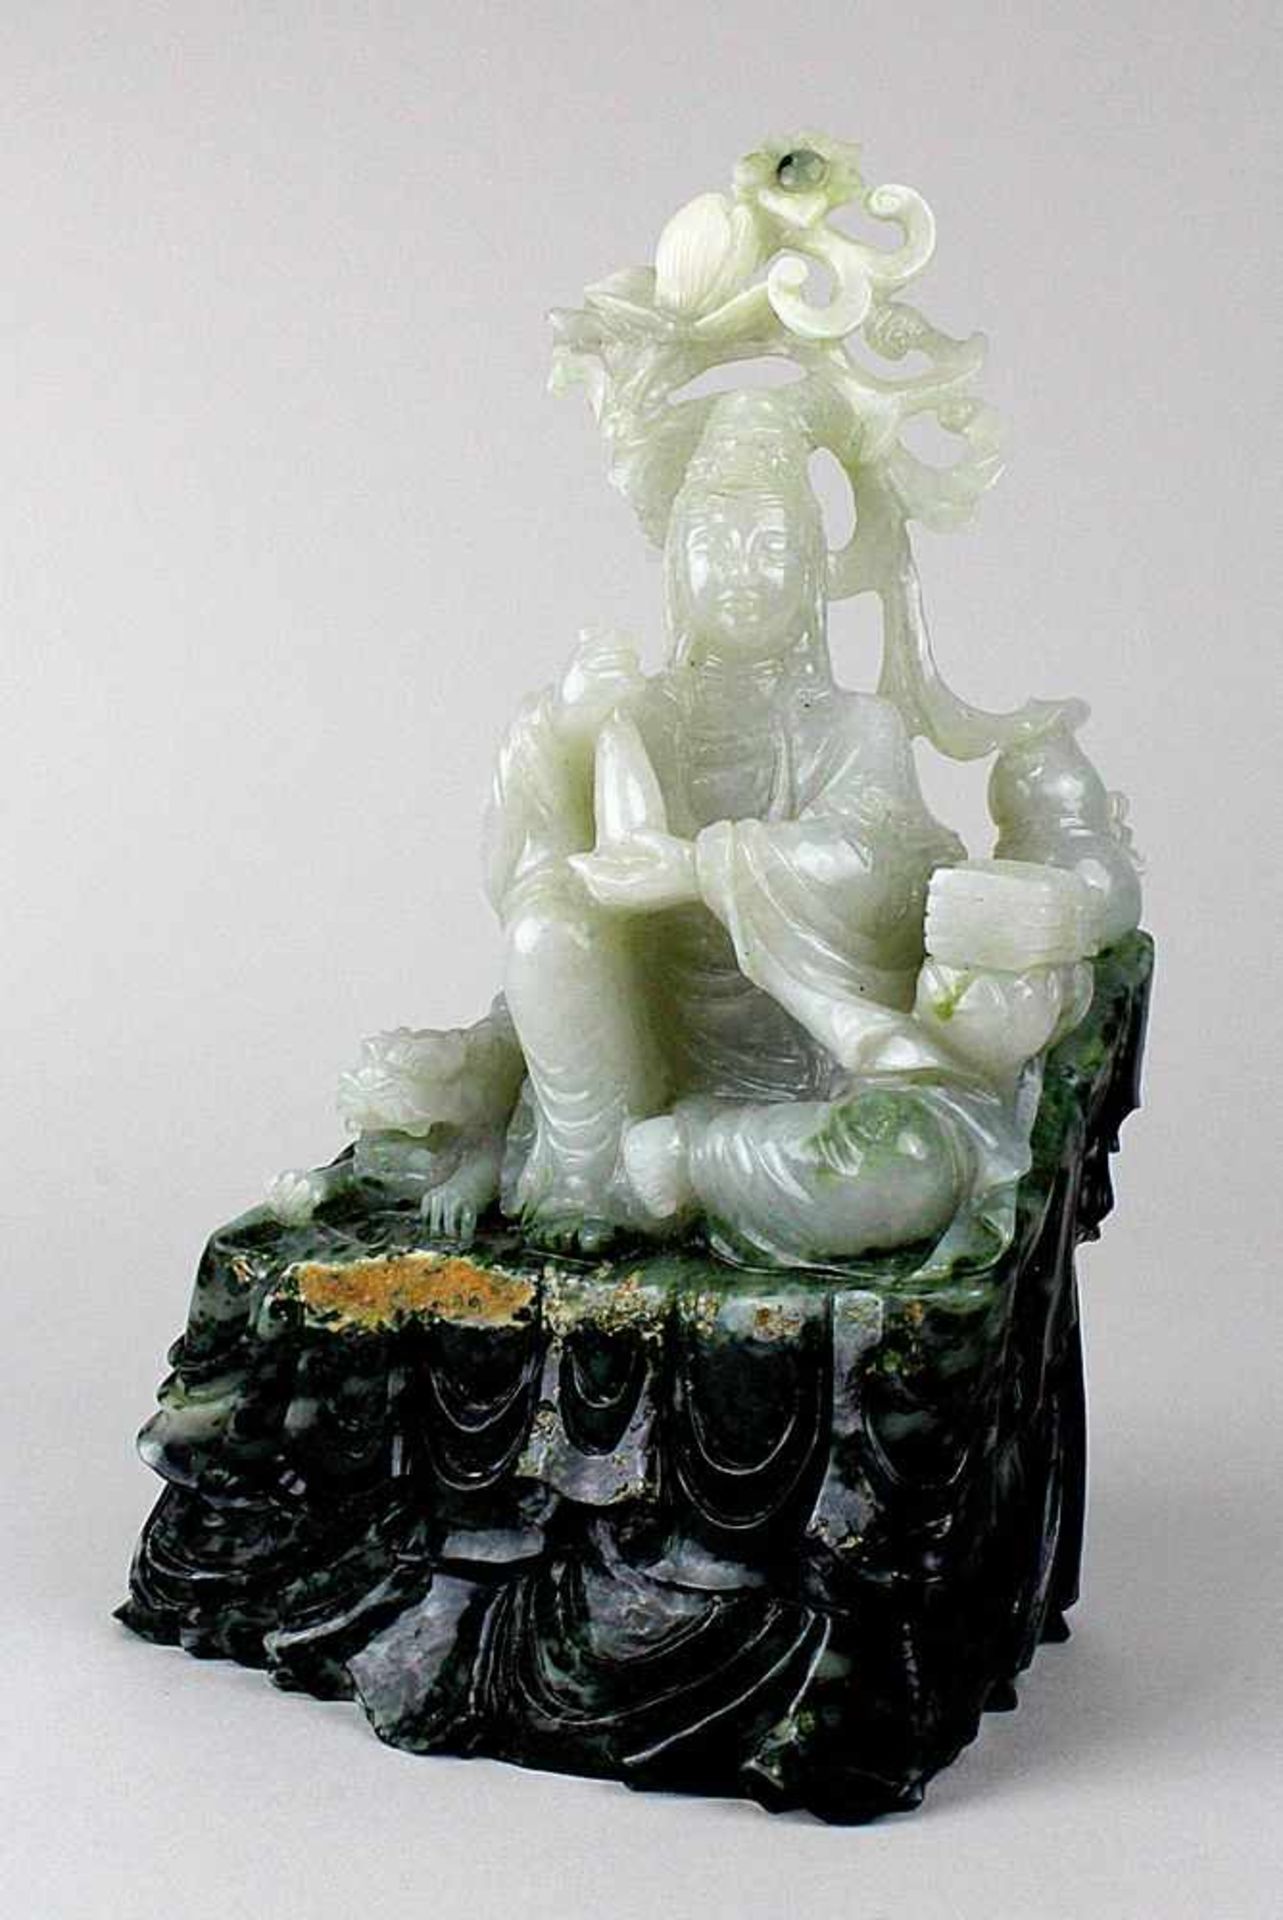 Guanyin, China um 1900. Sitzende Figur mit Fohund und Attributen aus hellgrüner Jade mit